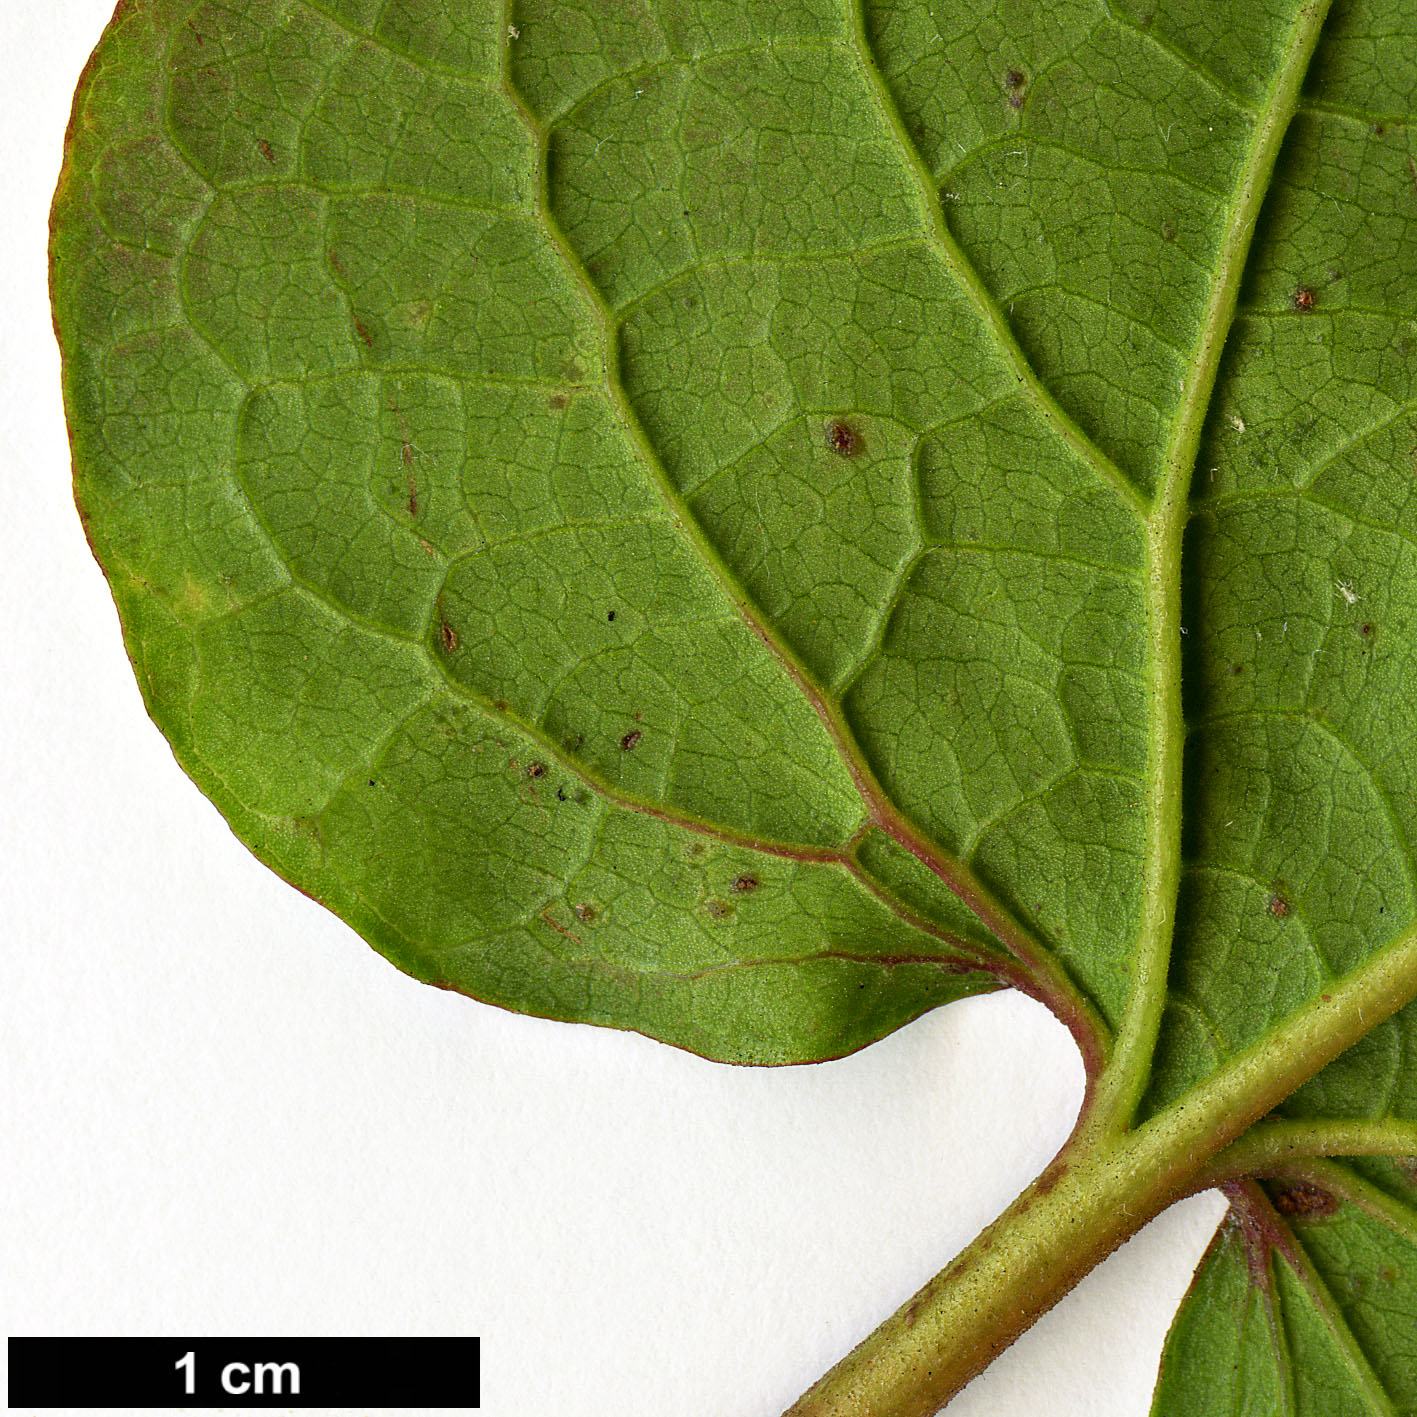 High resolution image: Family: Cistaceae - Genus: Cistus - Taxon: populifolius - SpeciesSub: subsp. populifolius